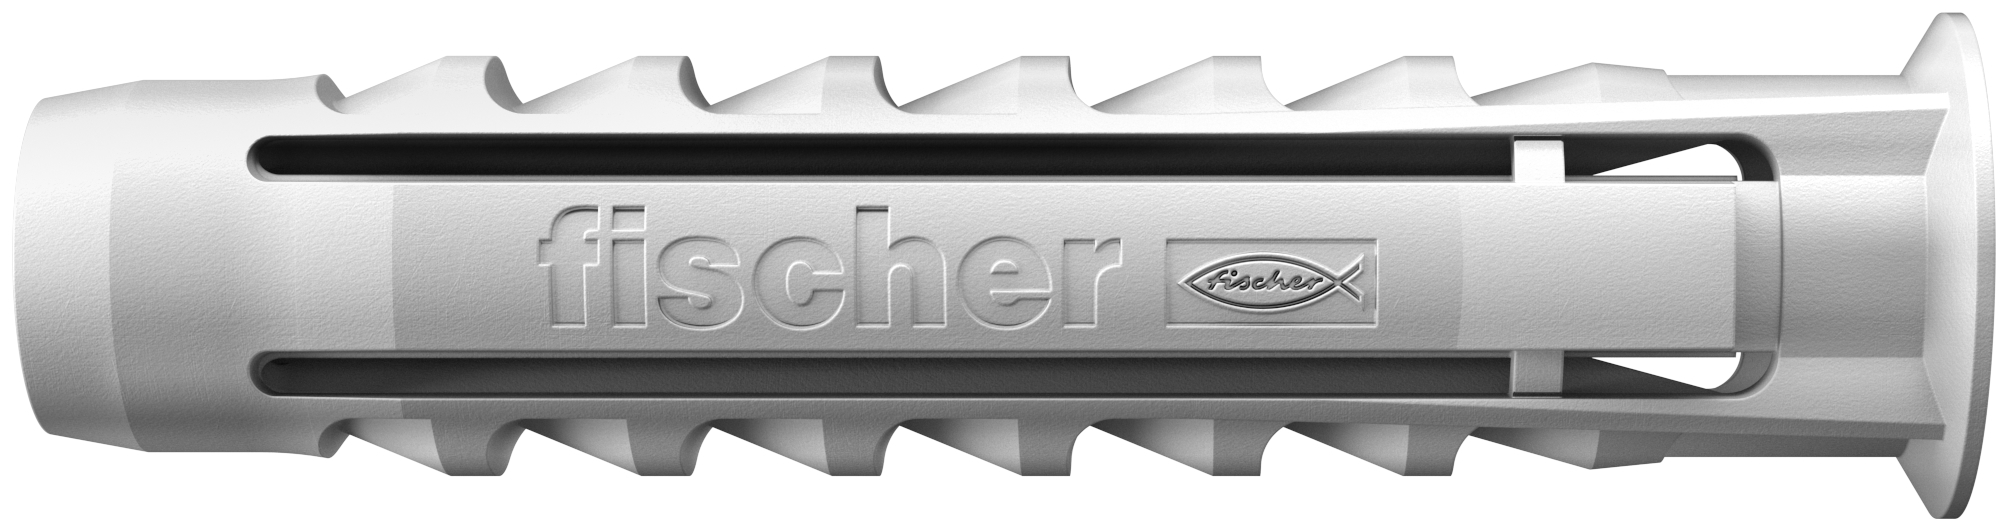 fischer Big Pack Tasselli SX 8 (120 Tasselli) (120 Pz.) Busta di tasselli formato convenienza.